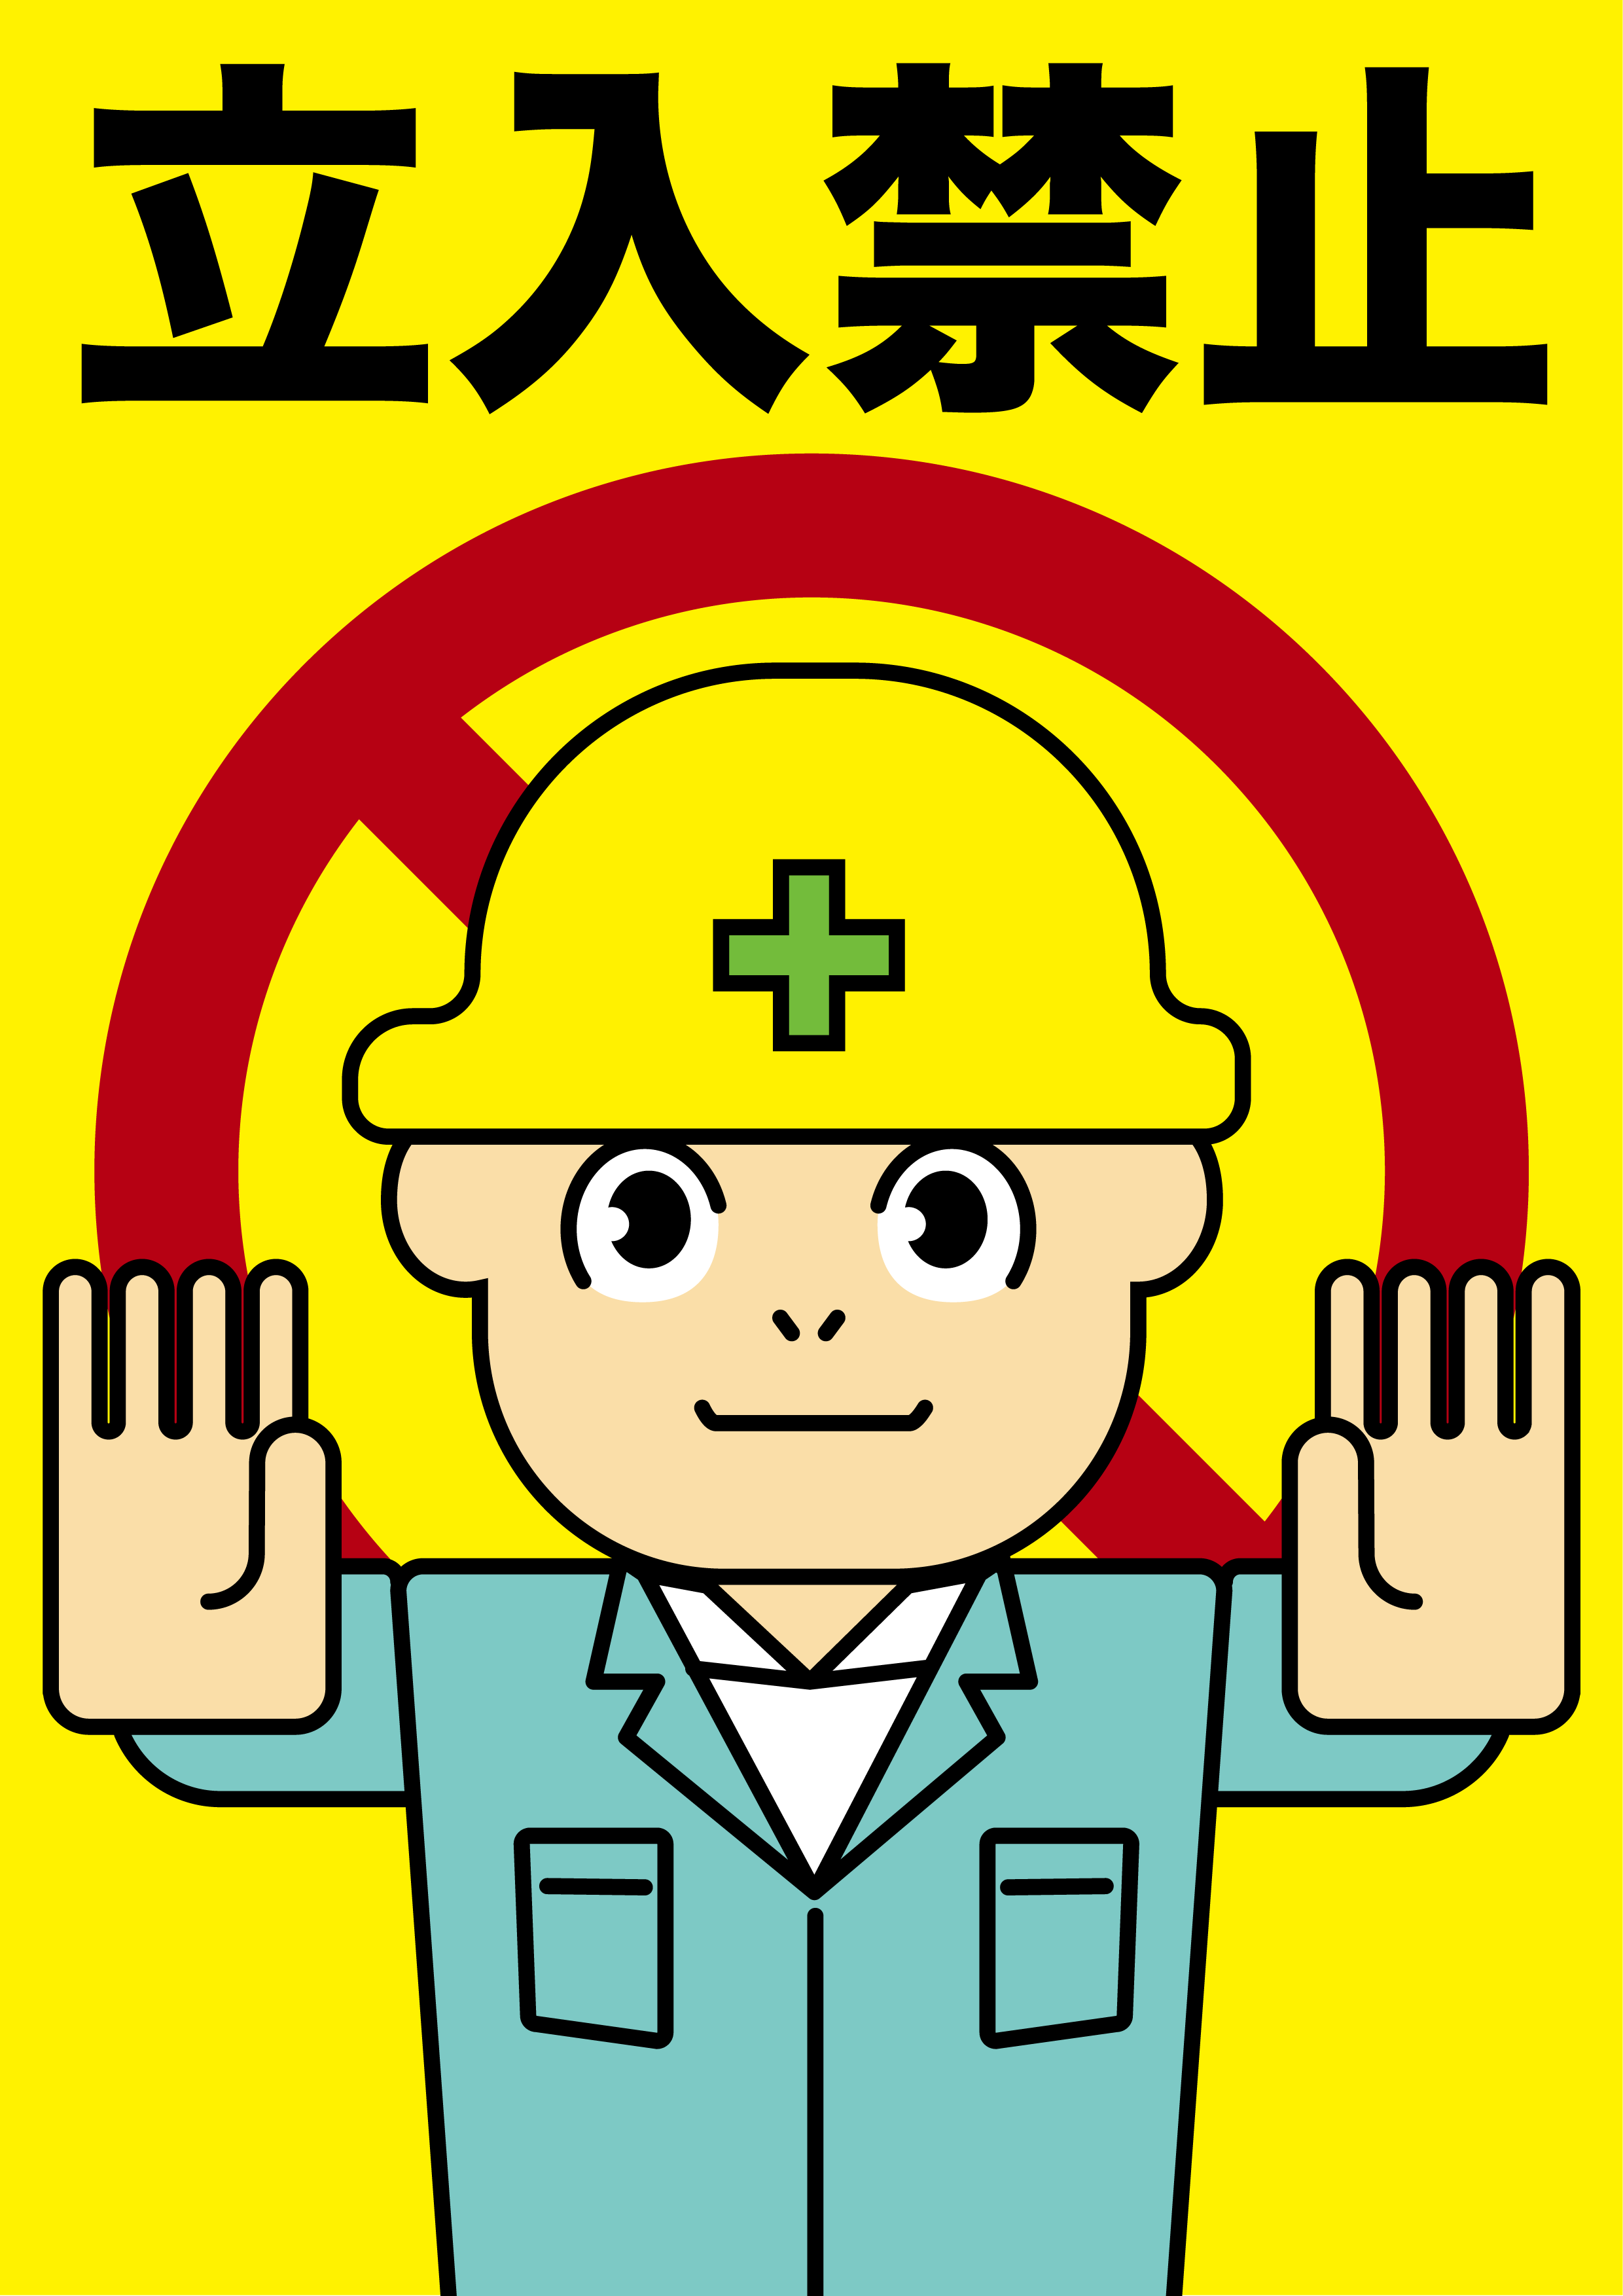 安全第一 建設現場 工事現場のポスター イラスト 無料 フリー ダウンロードサイト